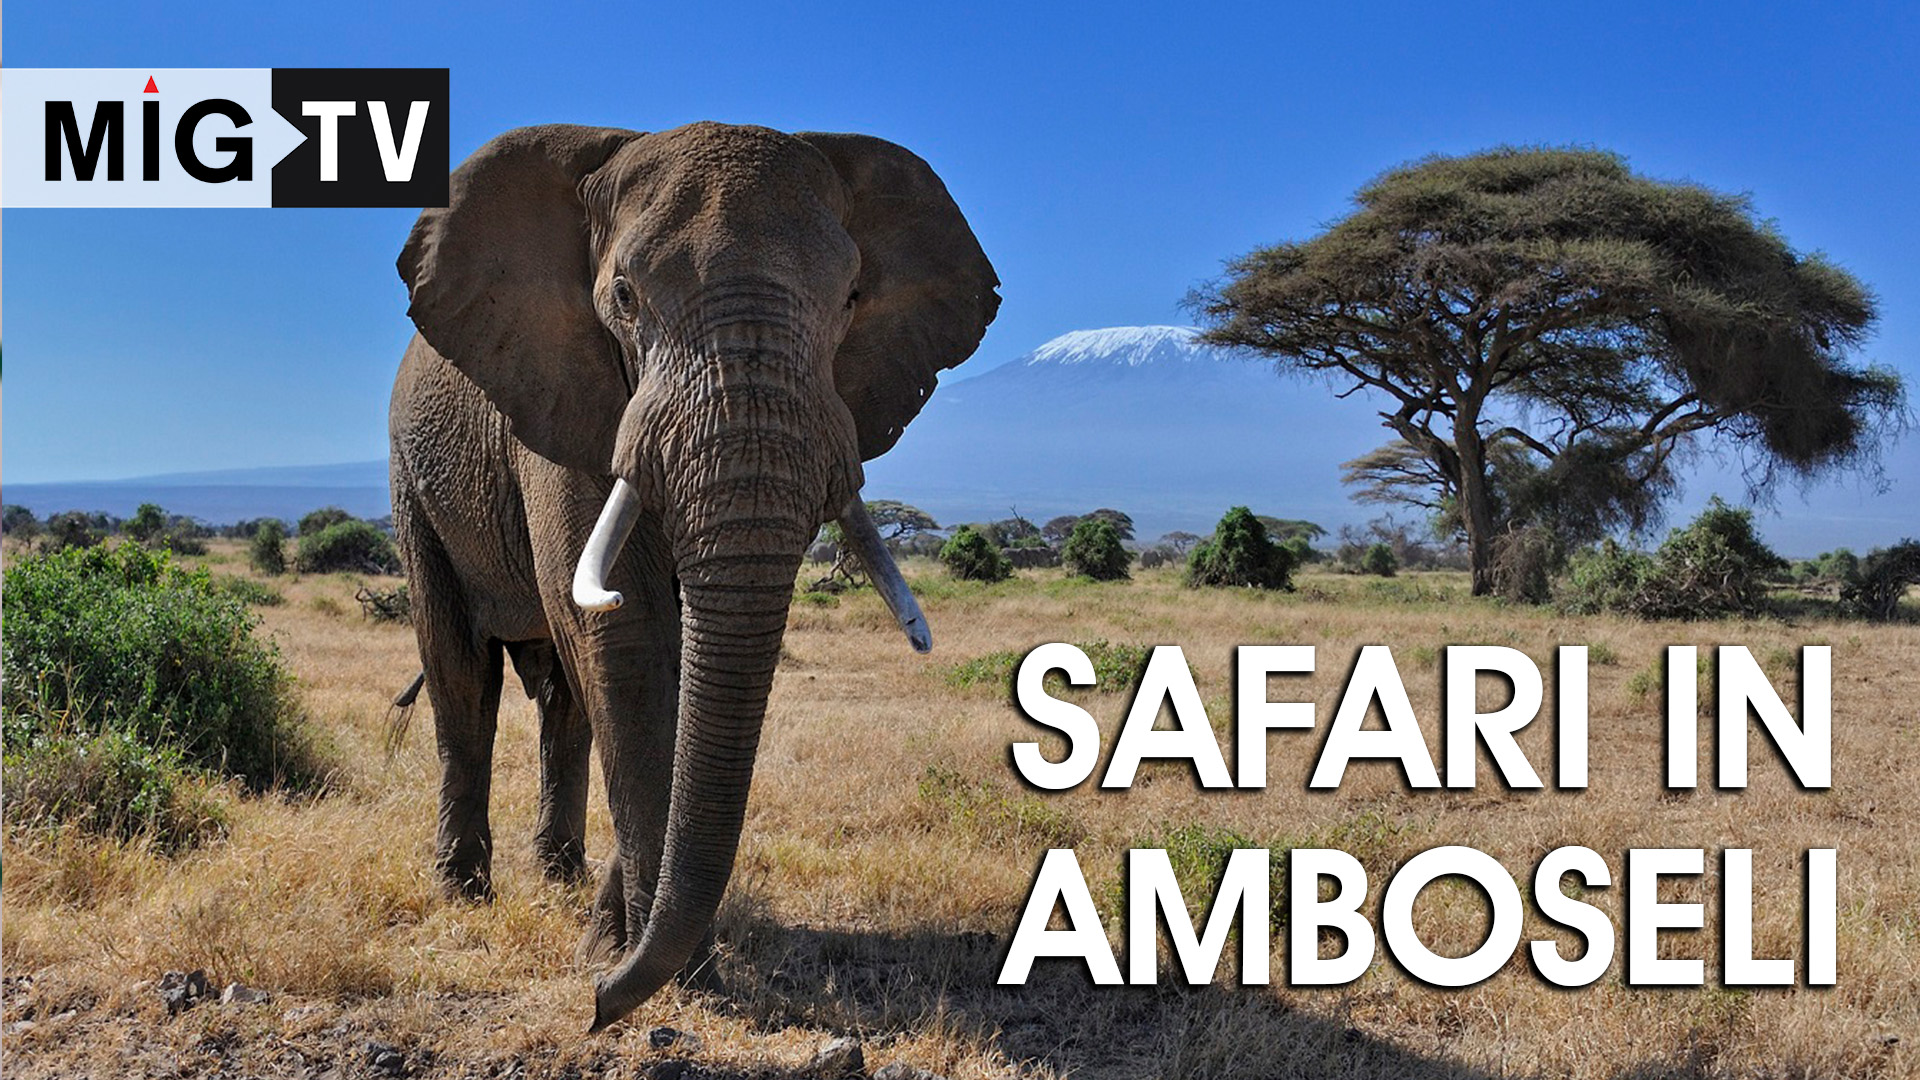 One day safari in Amboseli